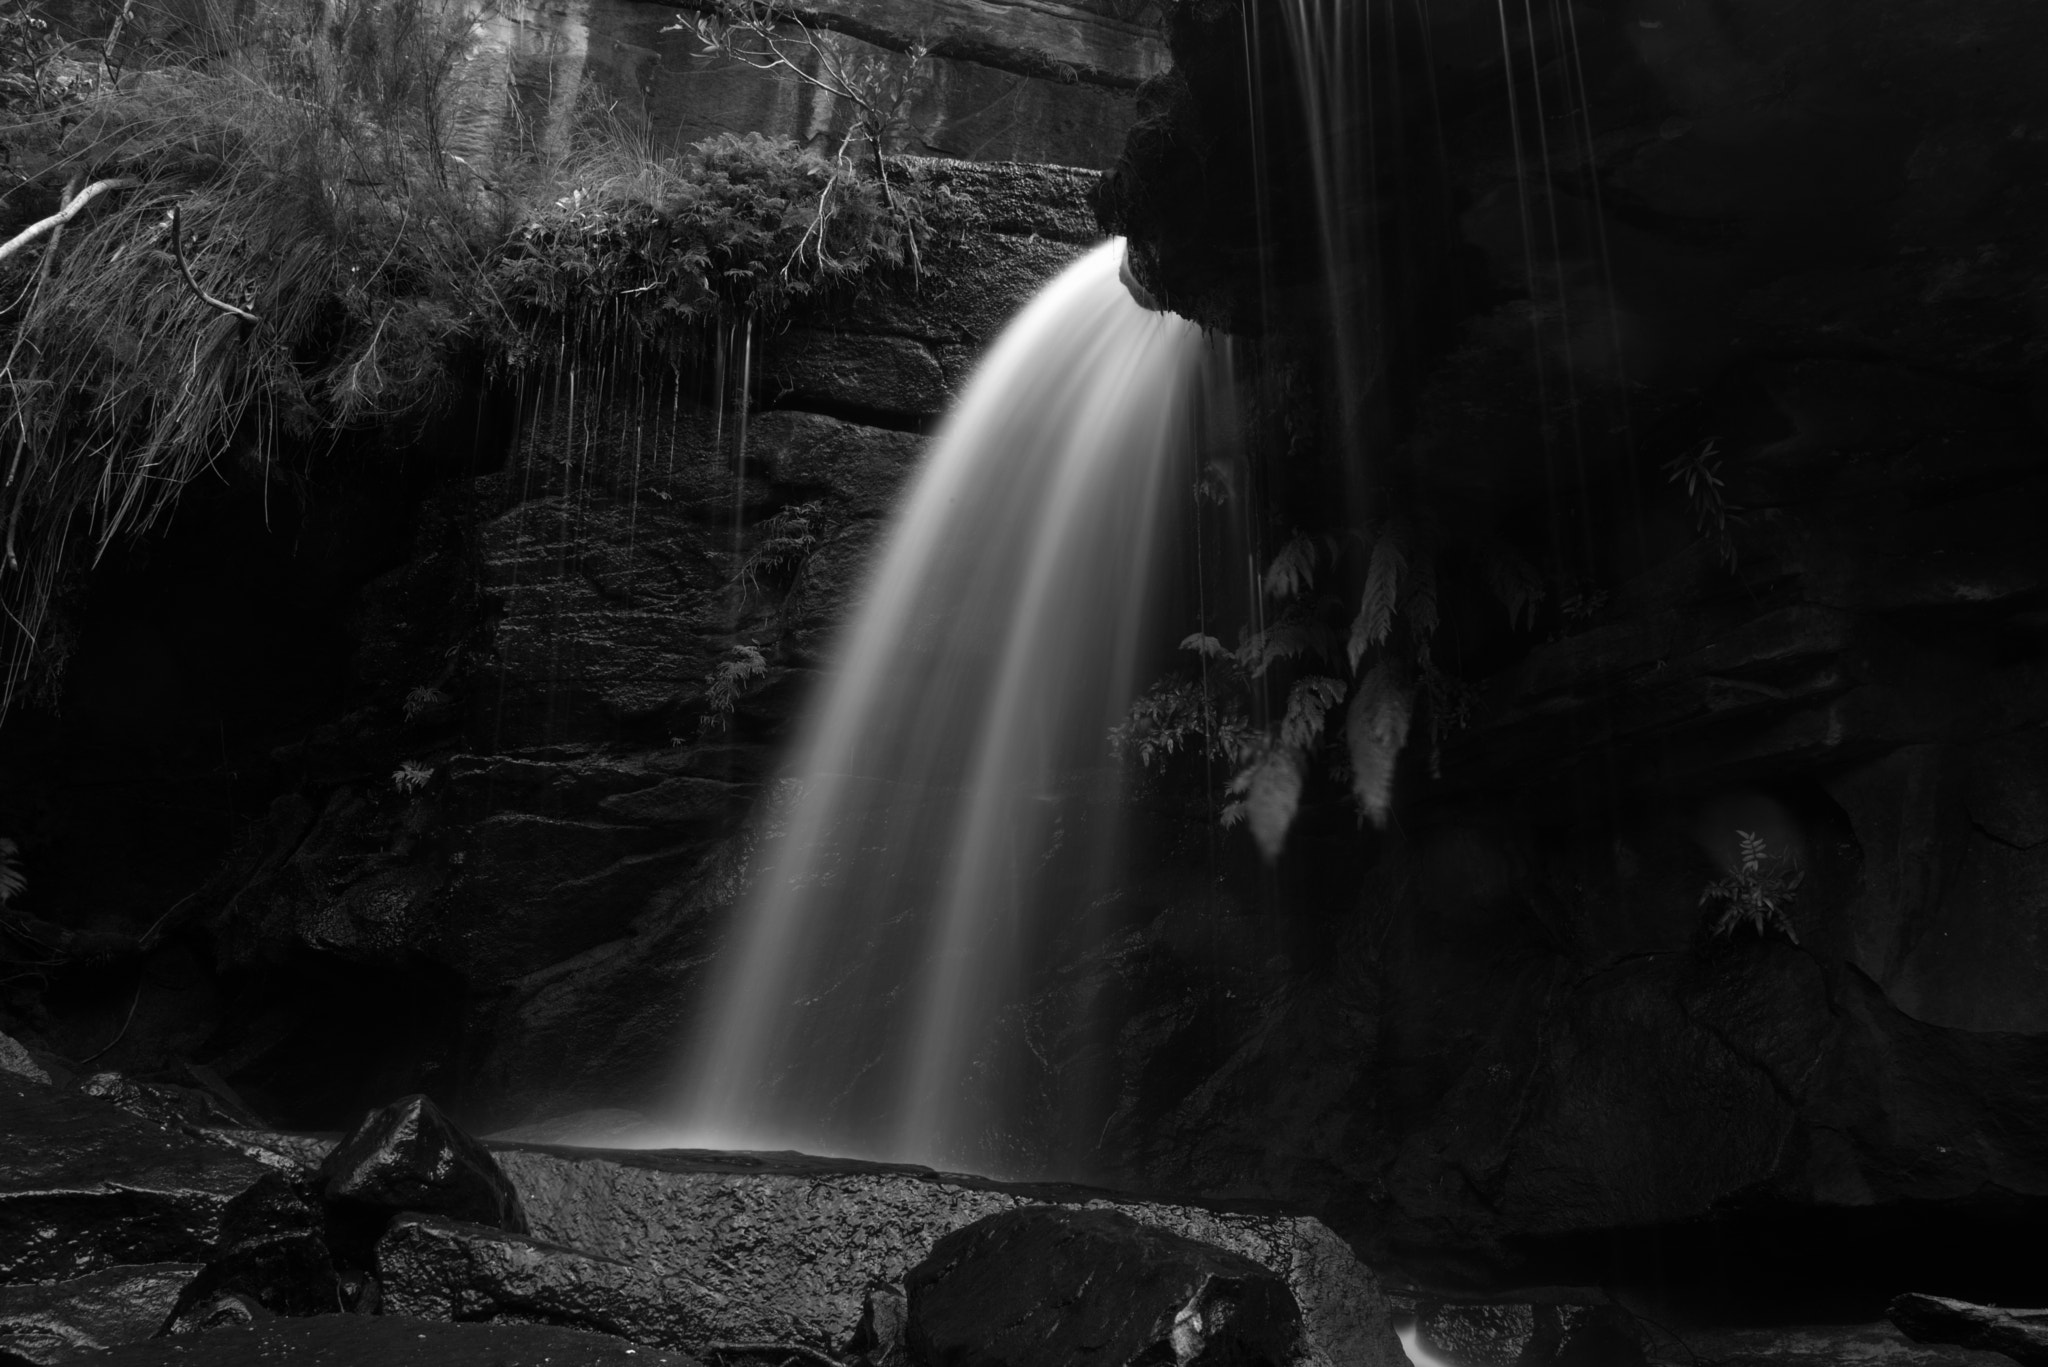 Nikon D750 + AF Zoom-Nikkor 28-80mm f/3.5-5.6D sample photo. Winifred falls, royal national park, nsw, australia photography